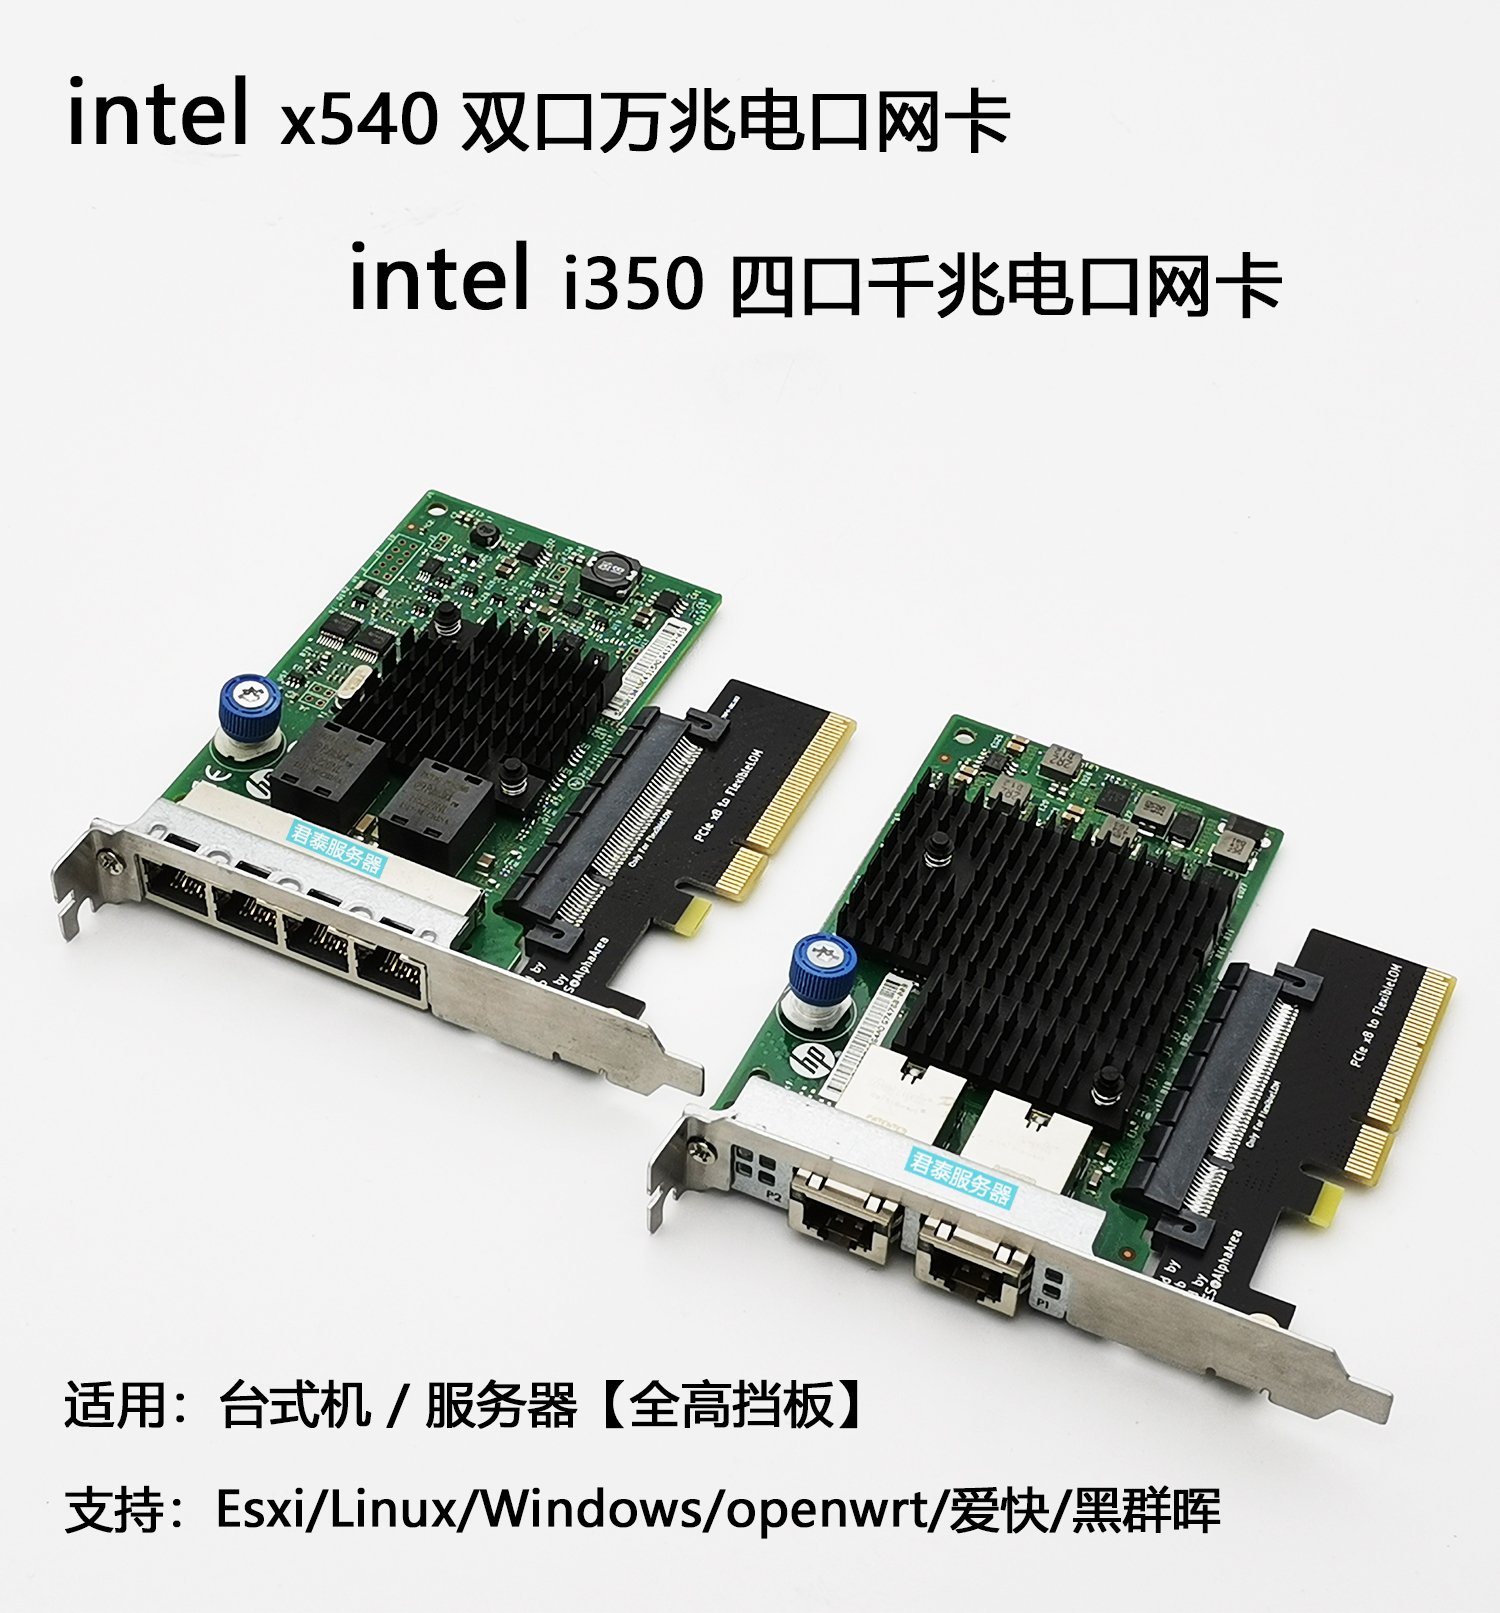 Intel x540 i350-t4 듀얼 포트 10기가비트 PCIe 네트워크 카드 4포트 기가비트 데스크탑 서버